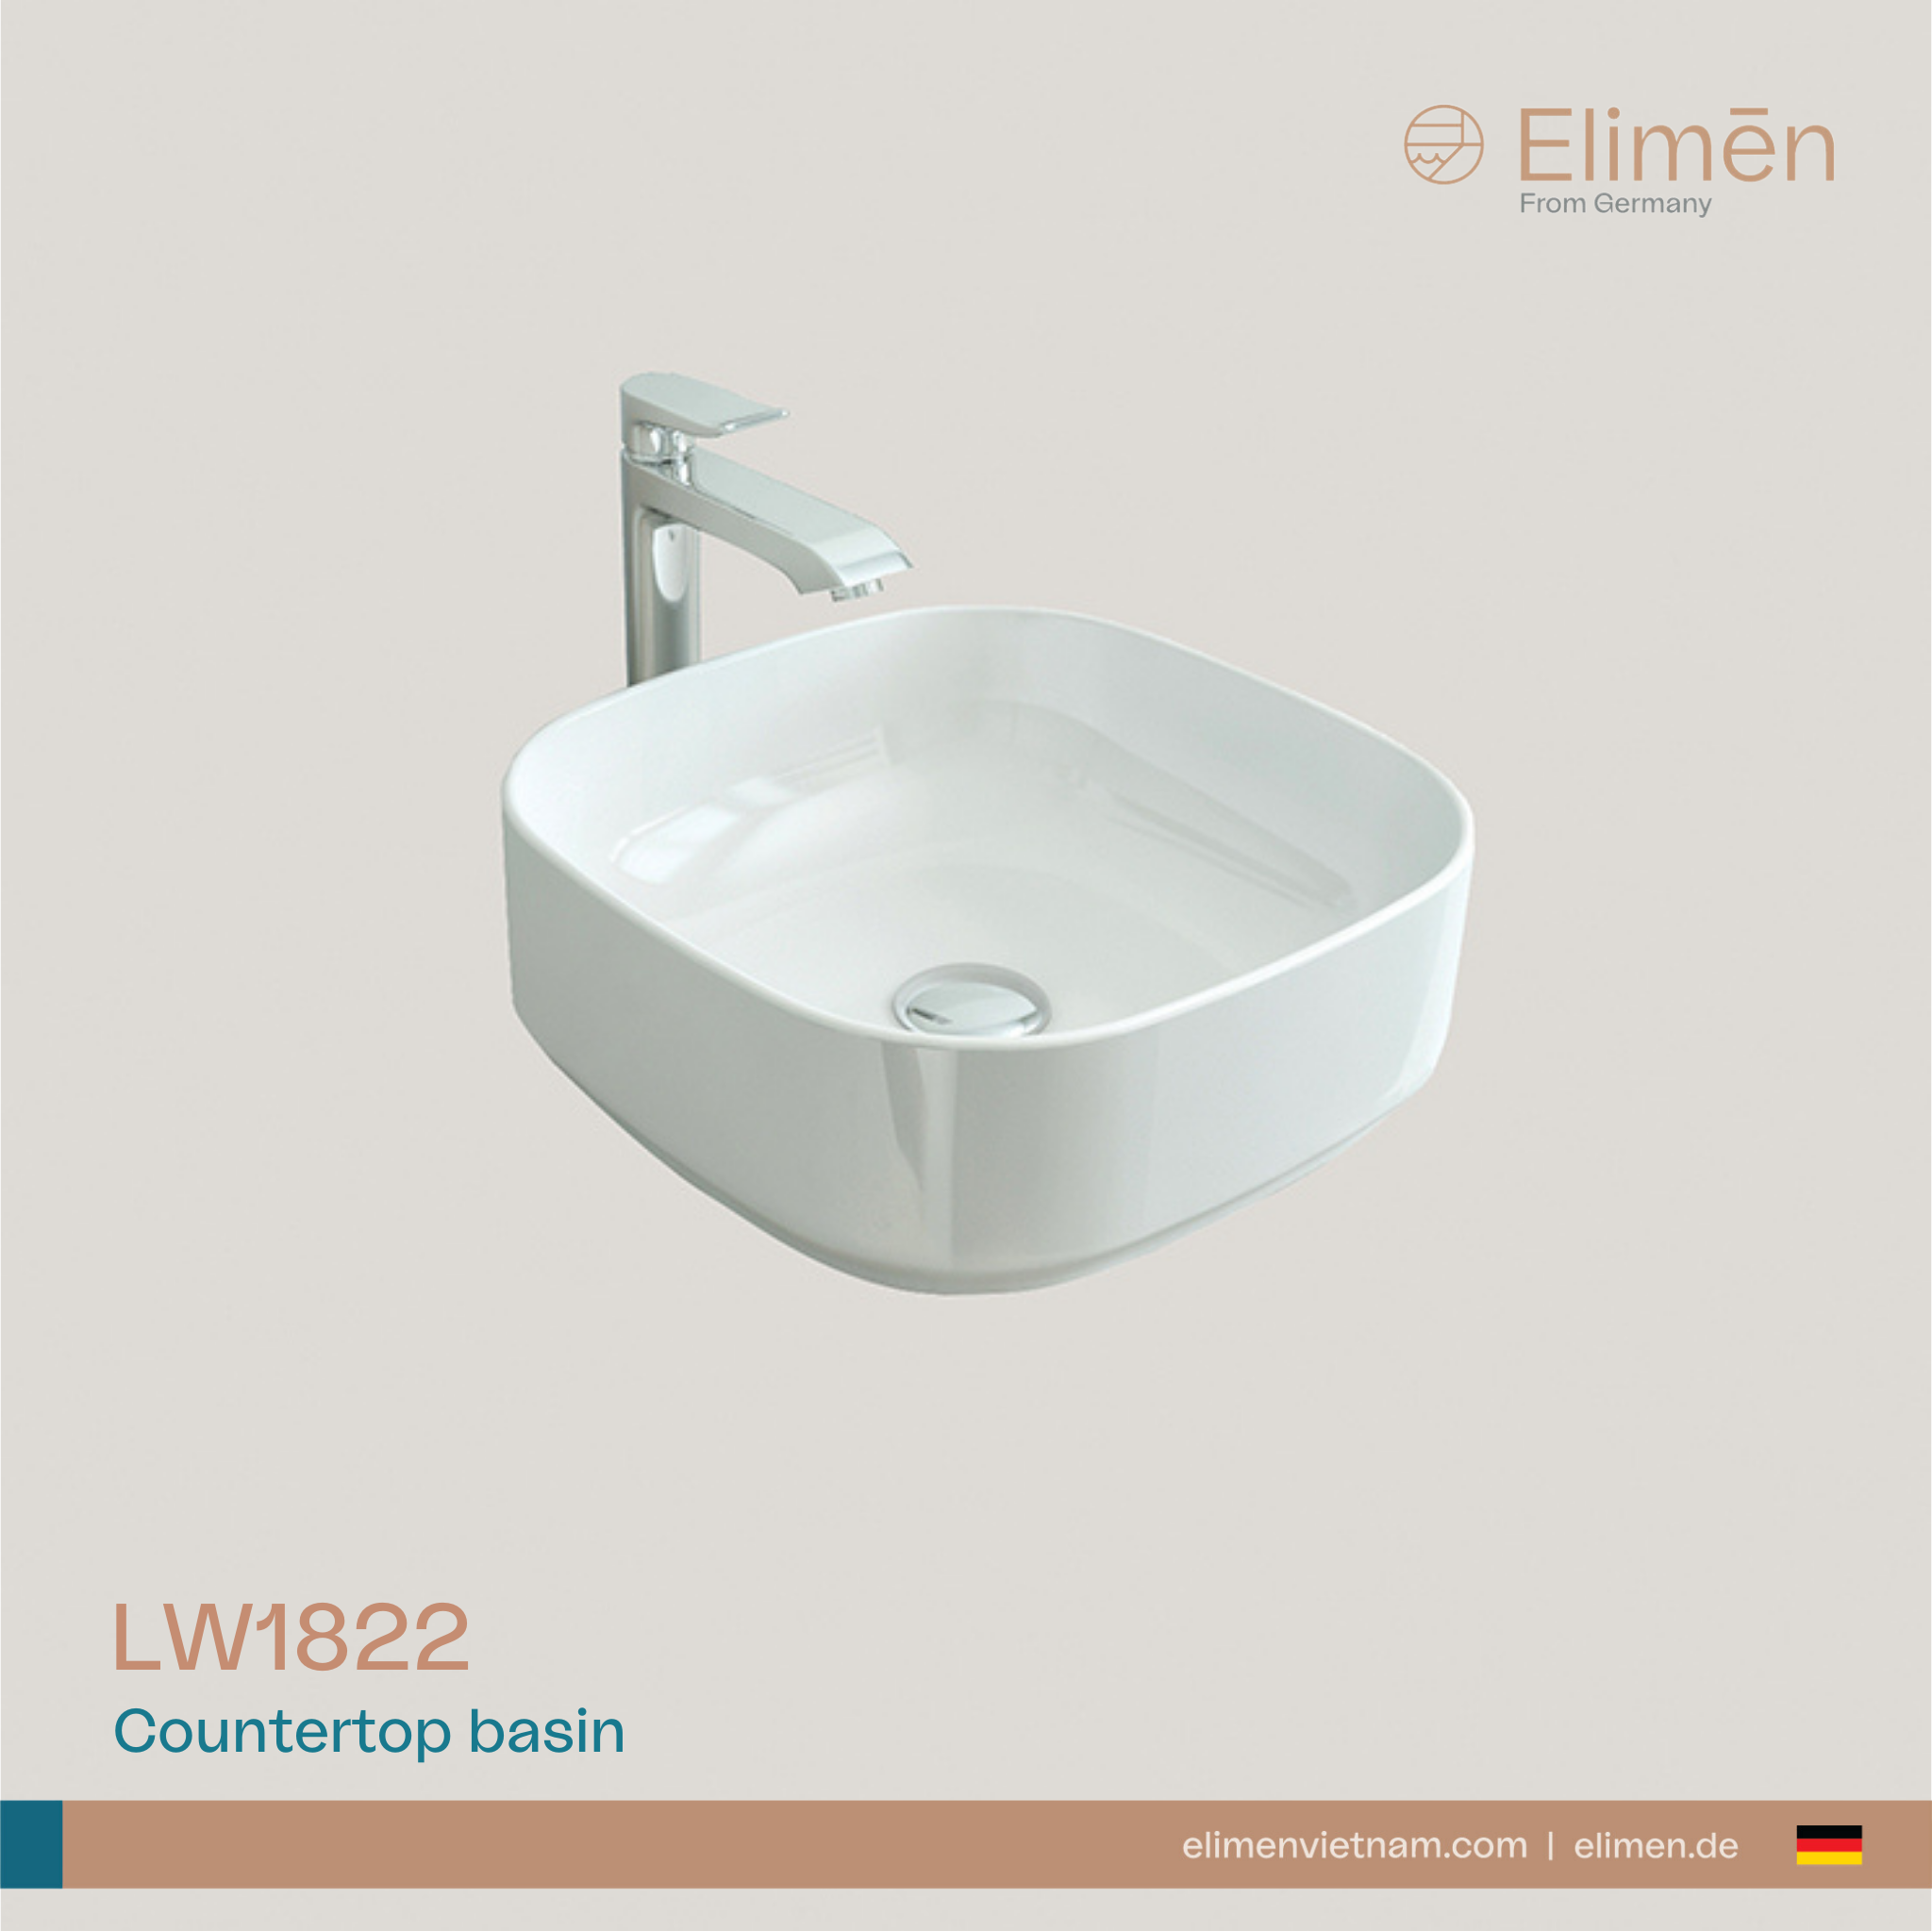 Elimen Countertop basin - Code LW1822